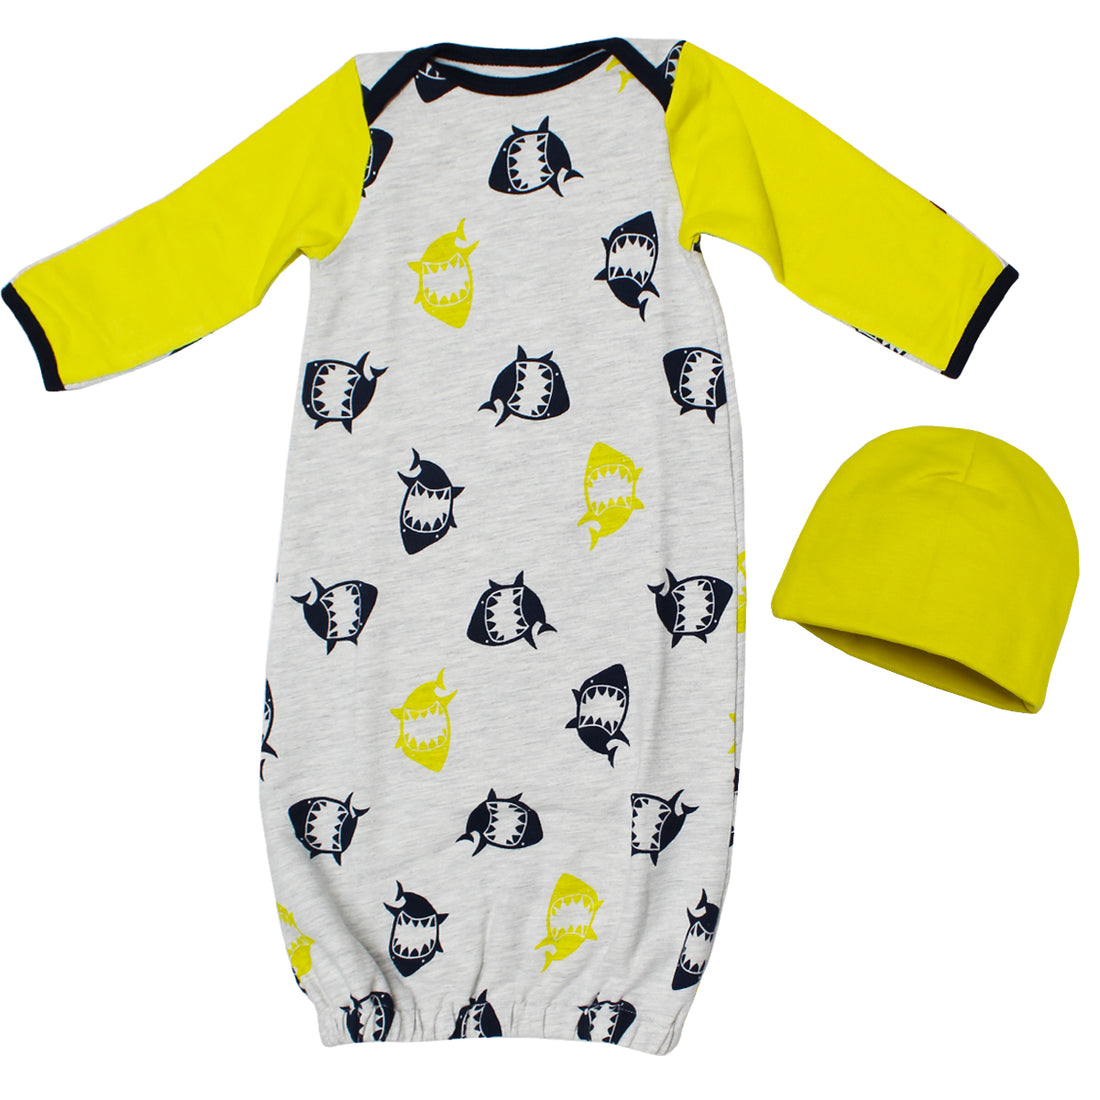 Sleepwear -baby gown (Newborn-5 Months)